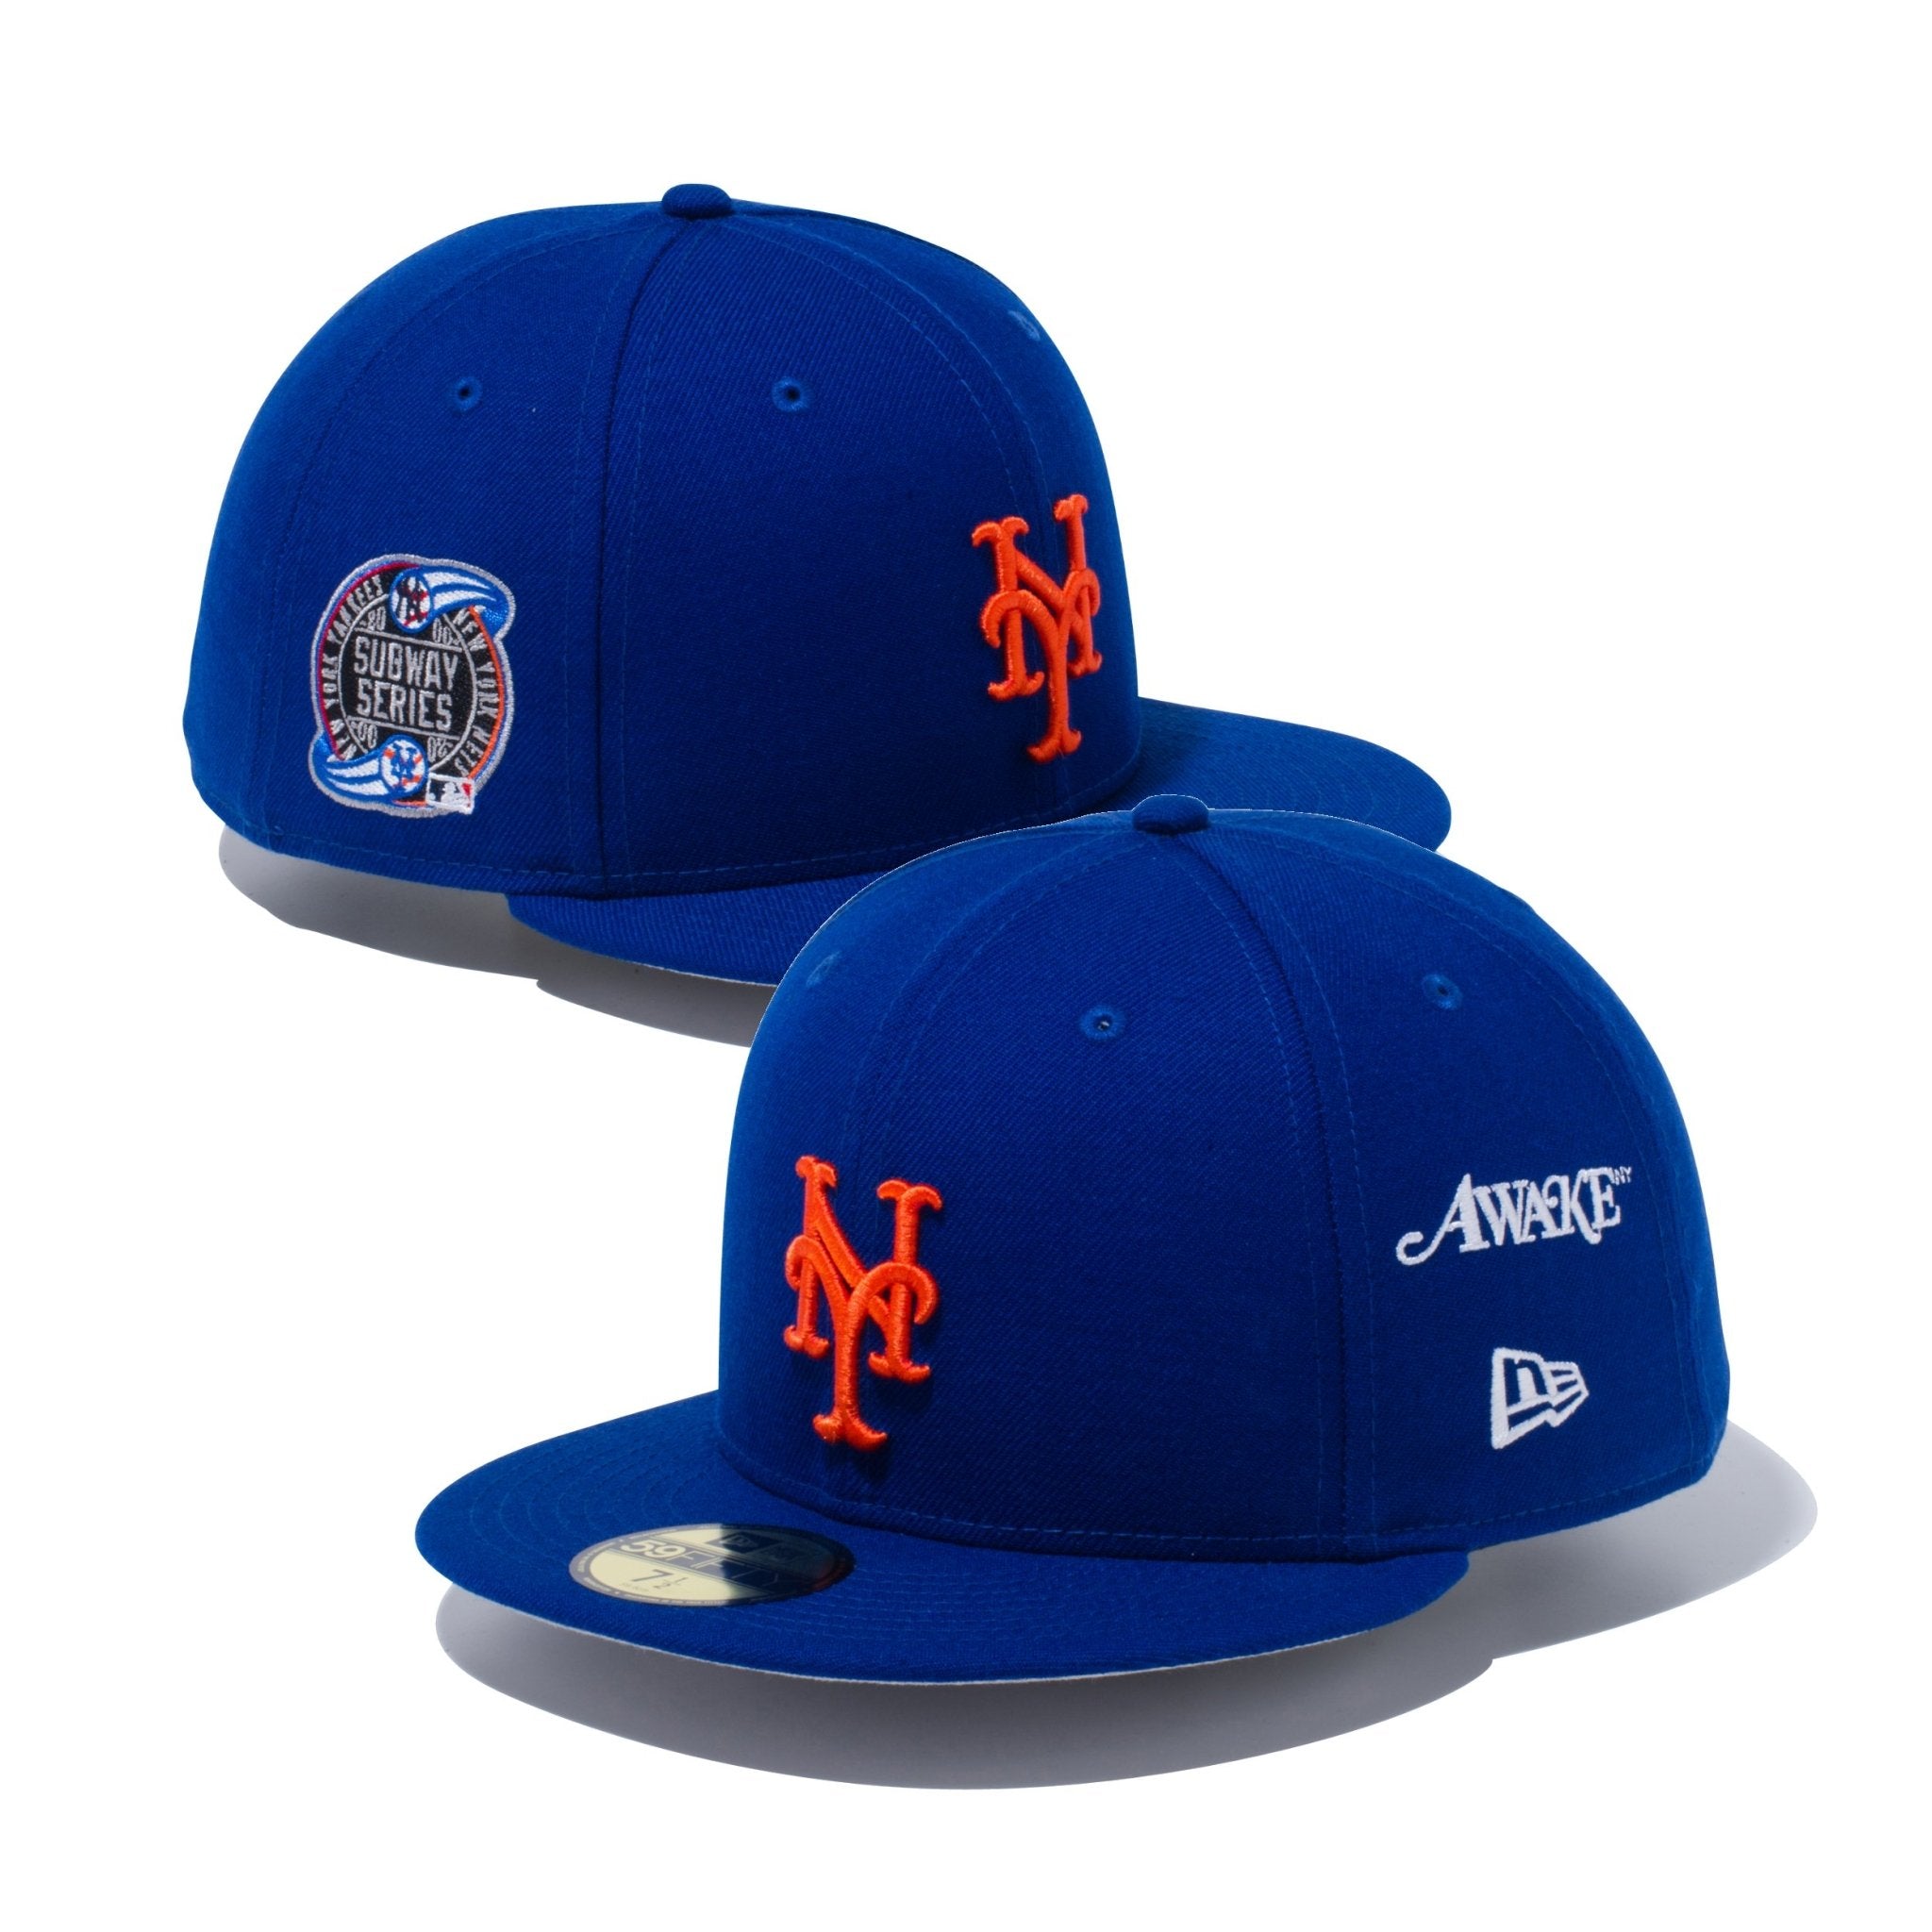 awake ny newera New York Mets 7 1/8キャップ